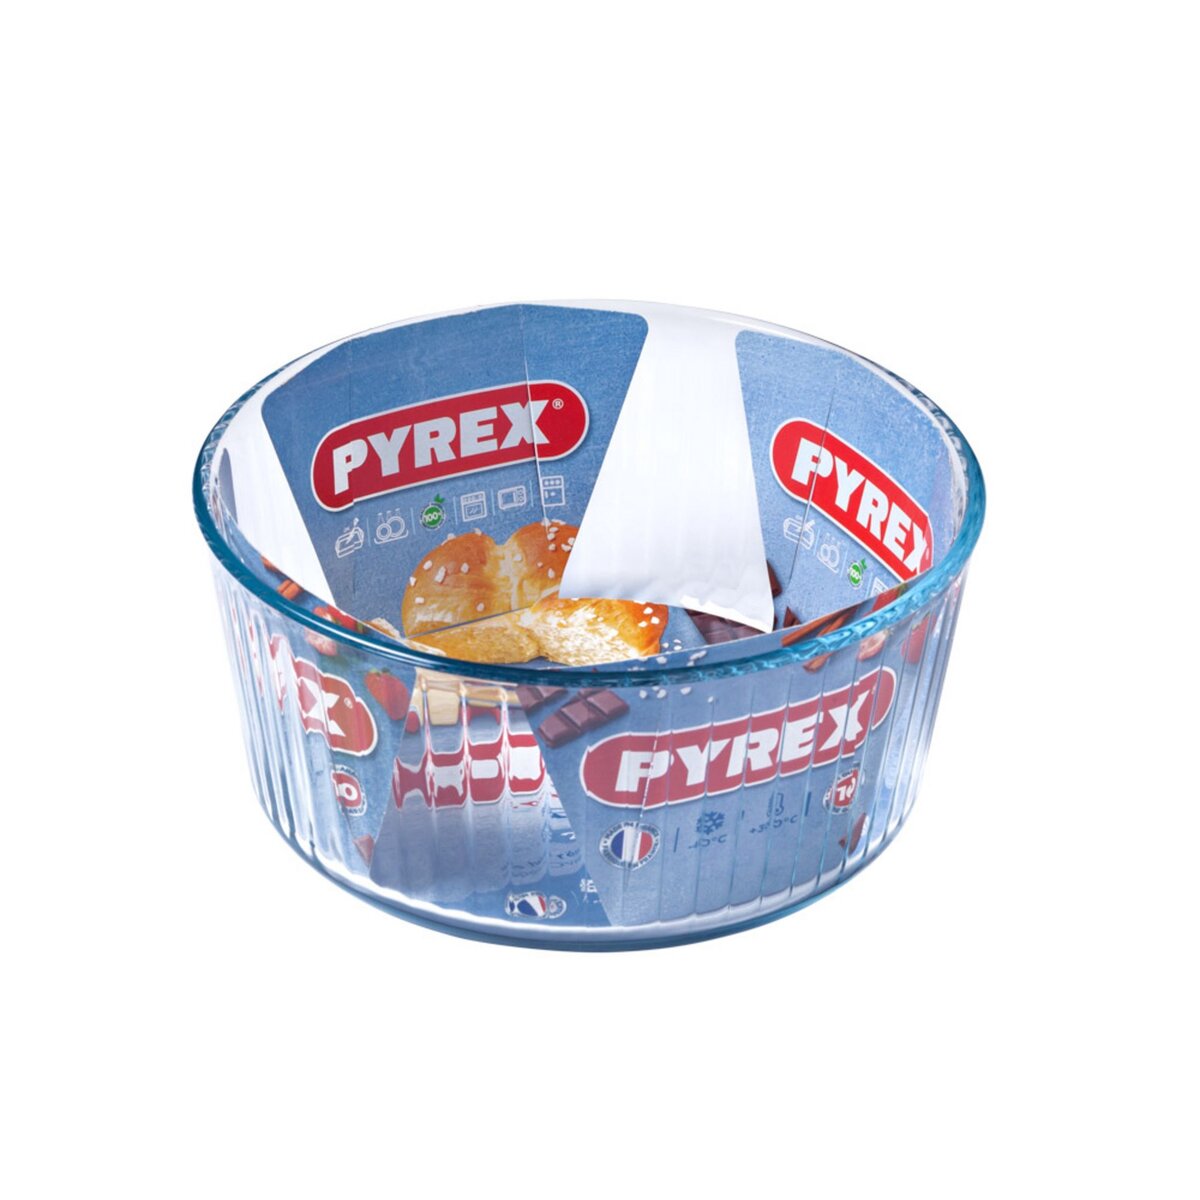 PYREX Moule à soufflé verre 21 cm Pyrex Bake & Enjoy pas cher